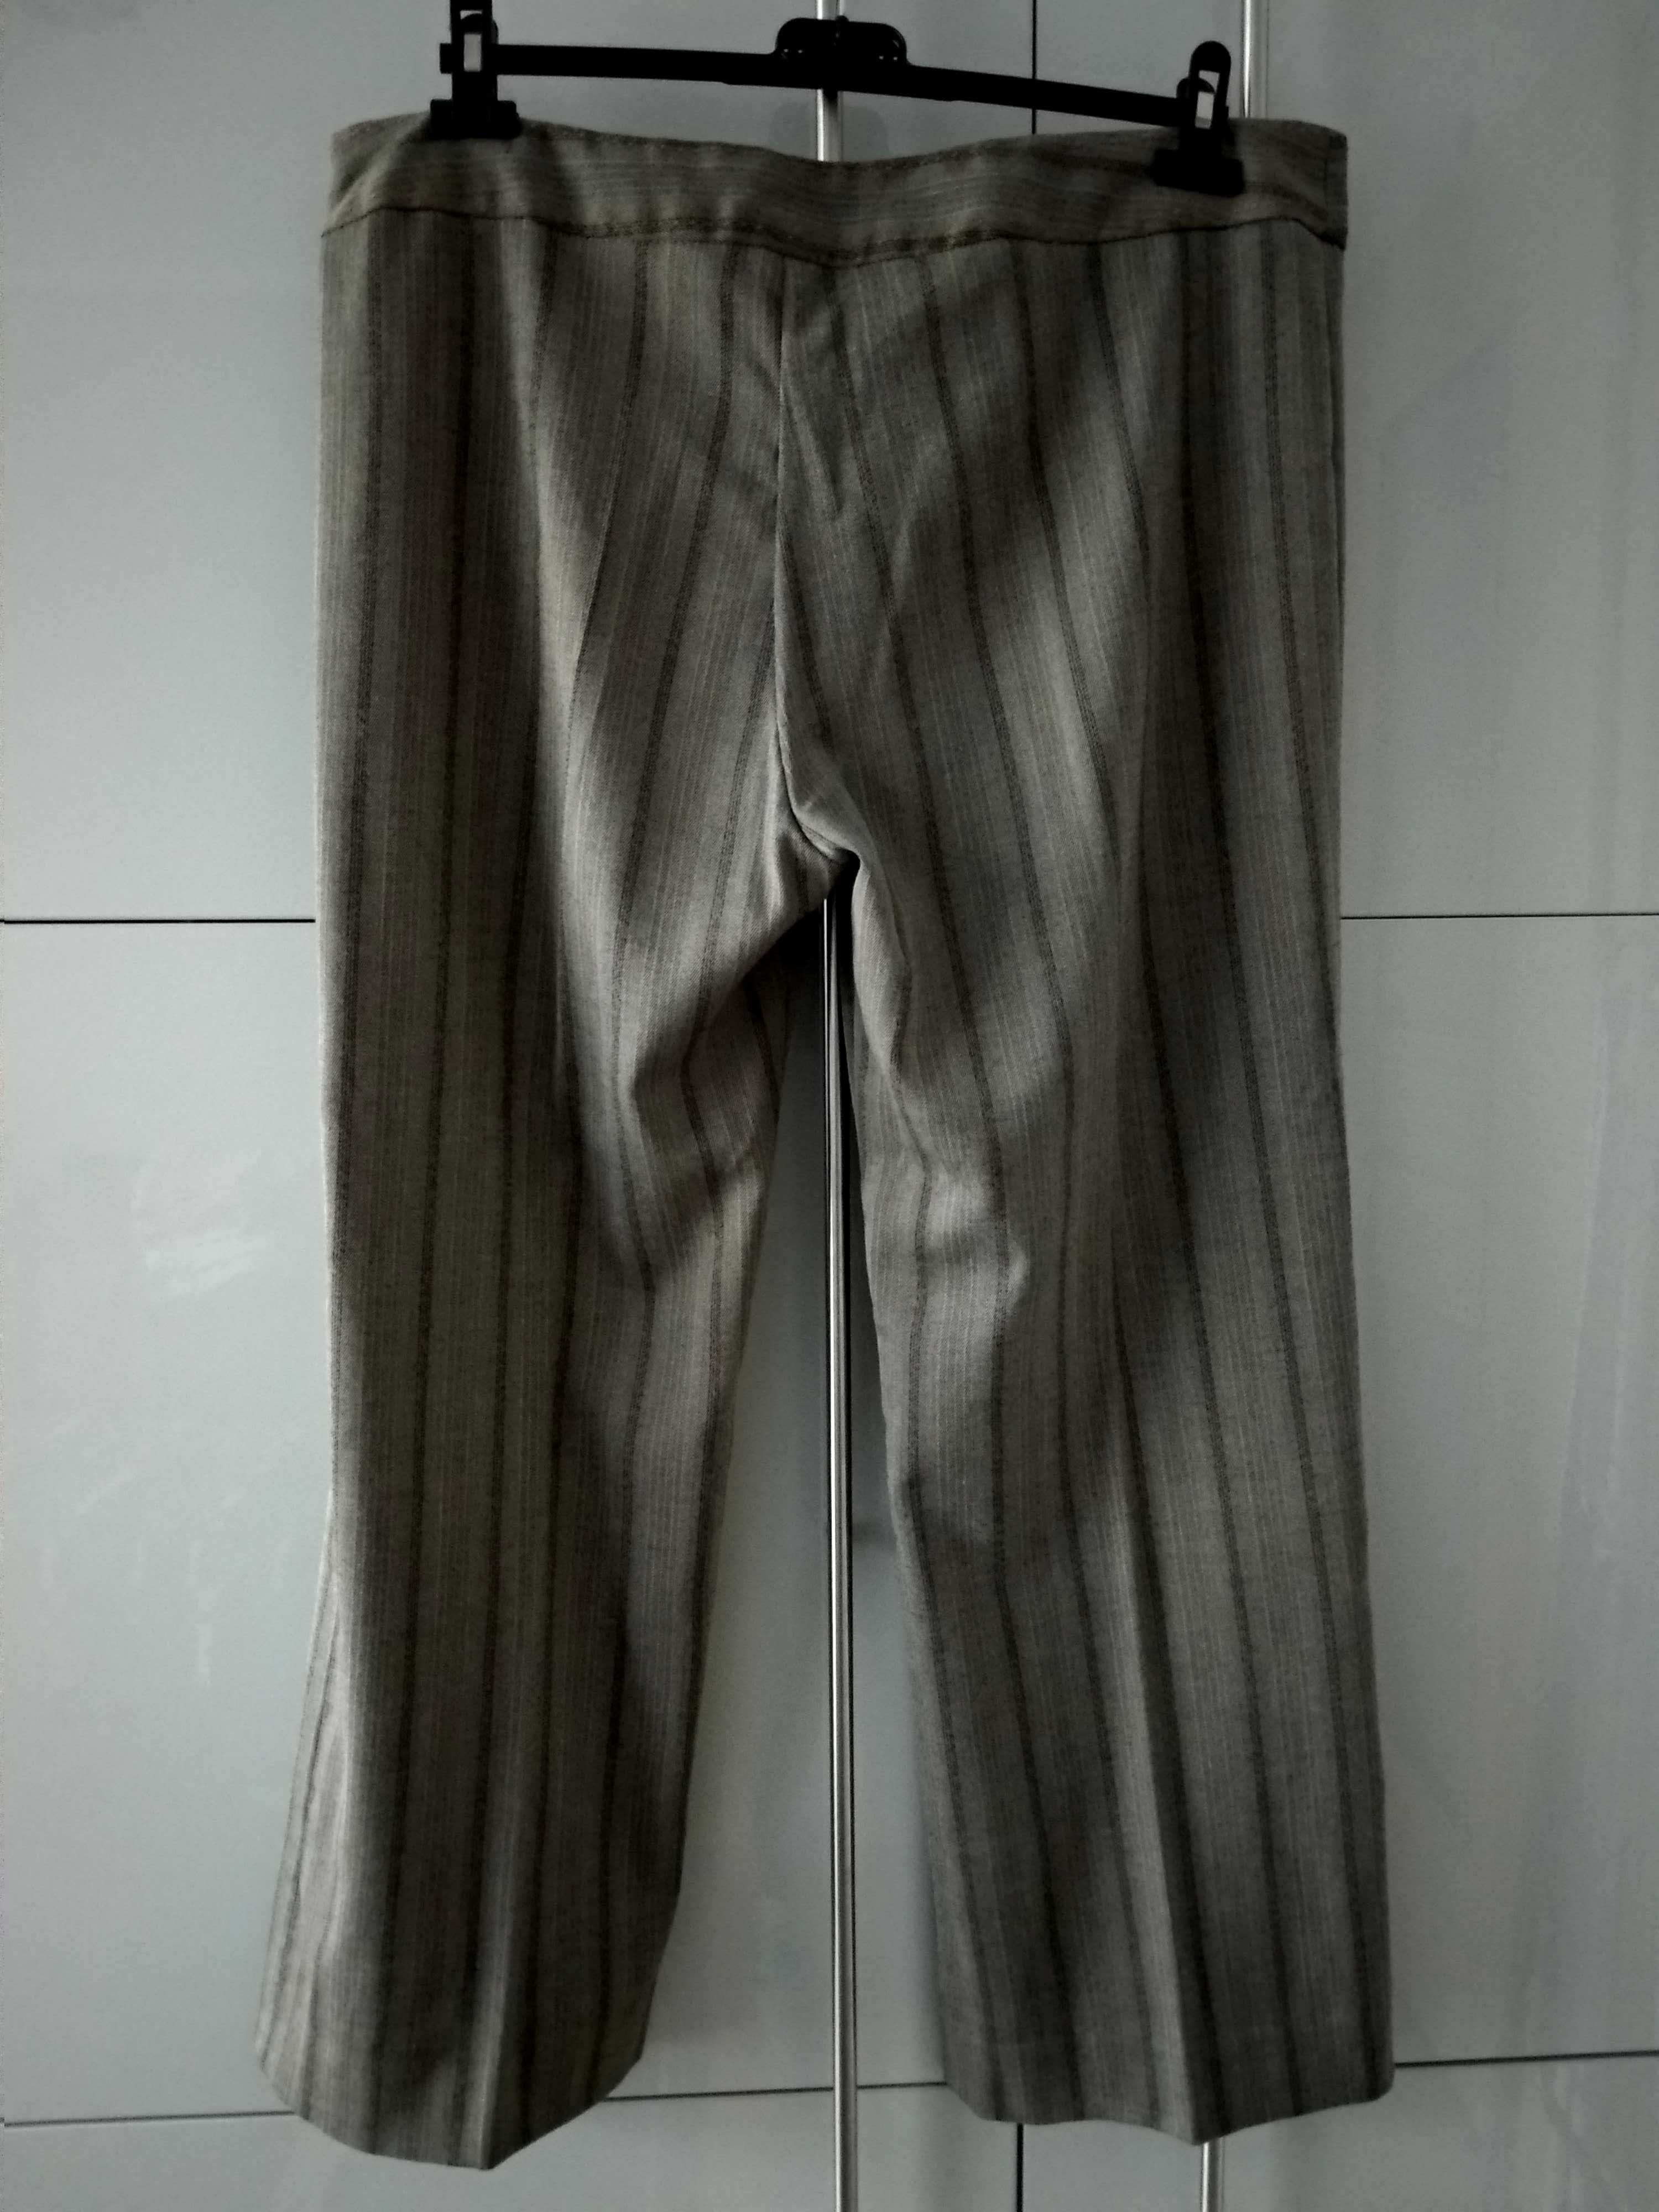 Spodnie materiałowe, szare w pasy, rozmiar 50, pas 100 cm.